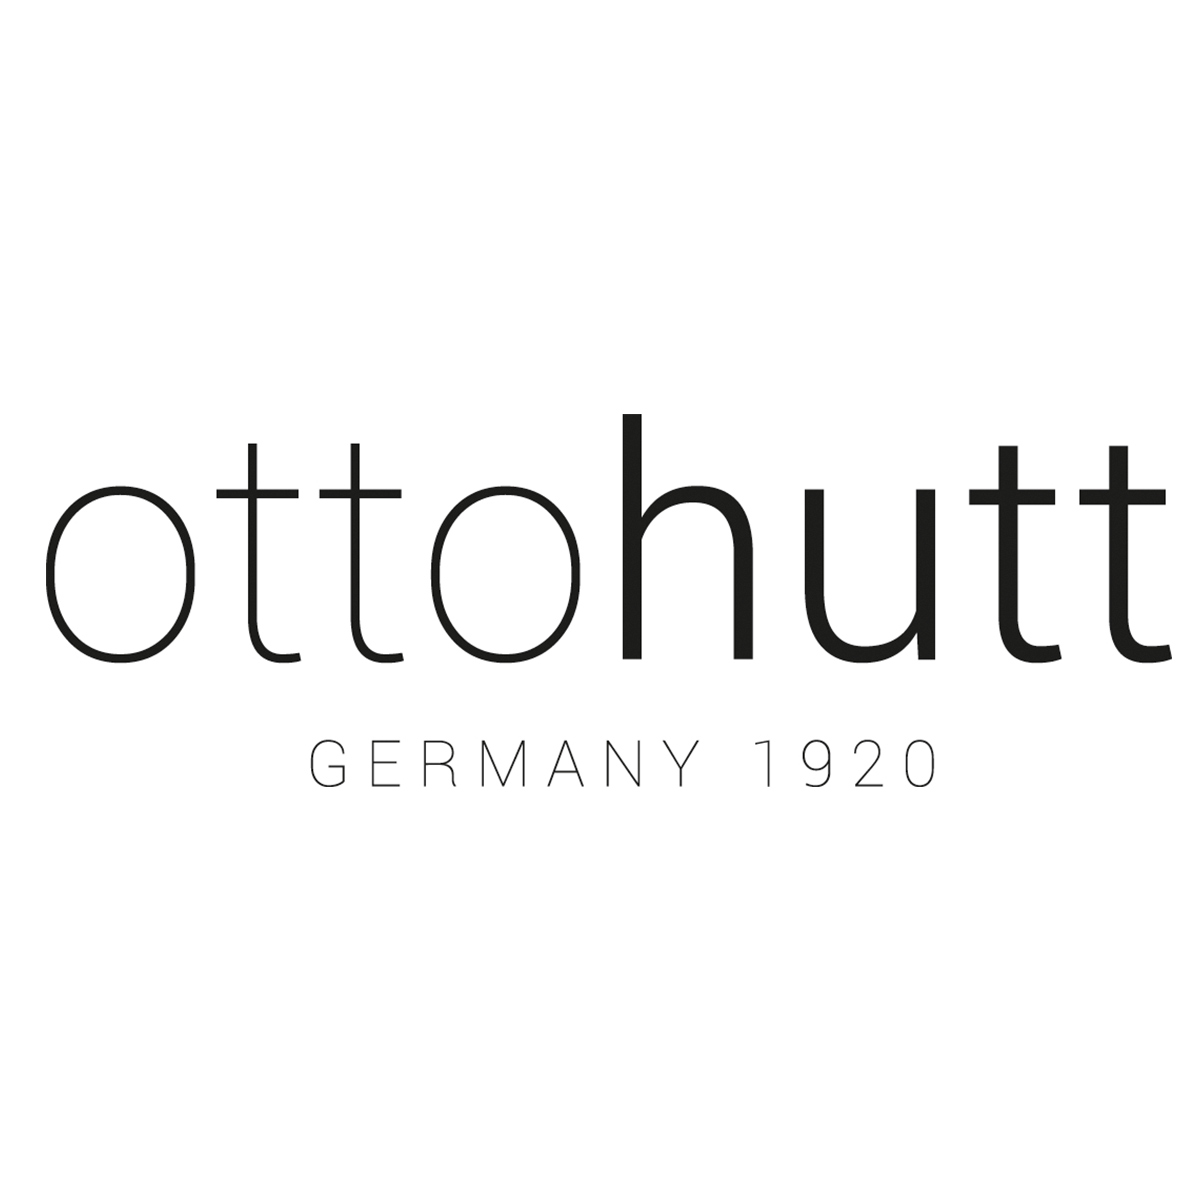 Otto Hutt